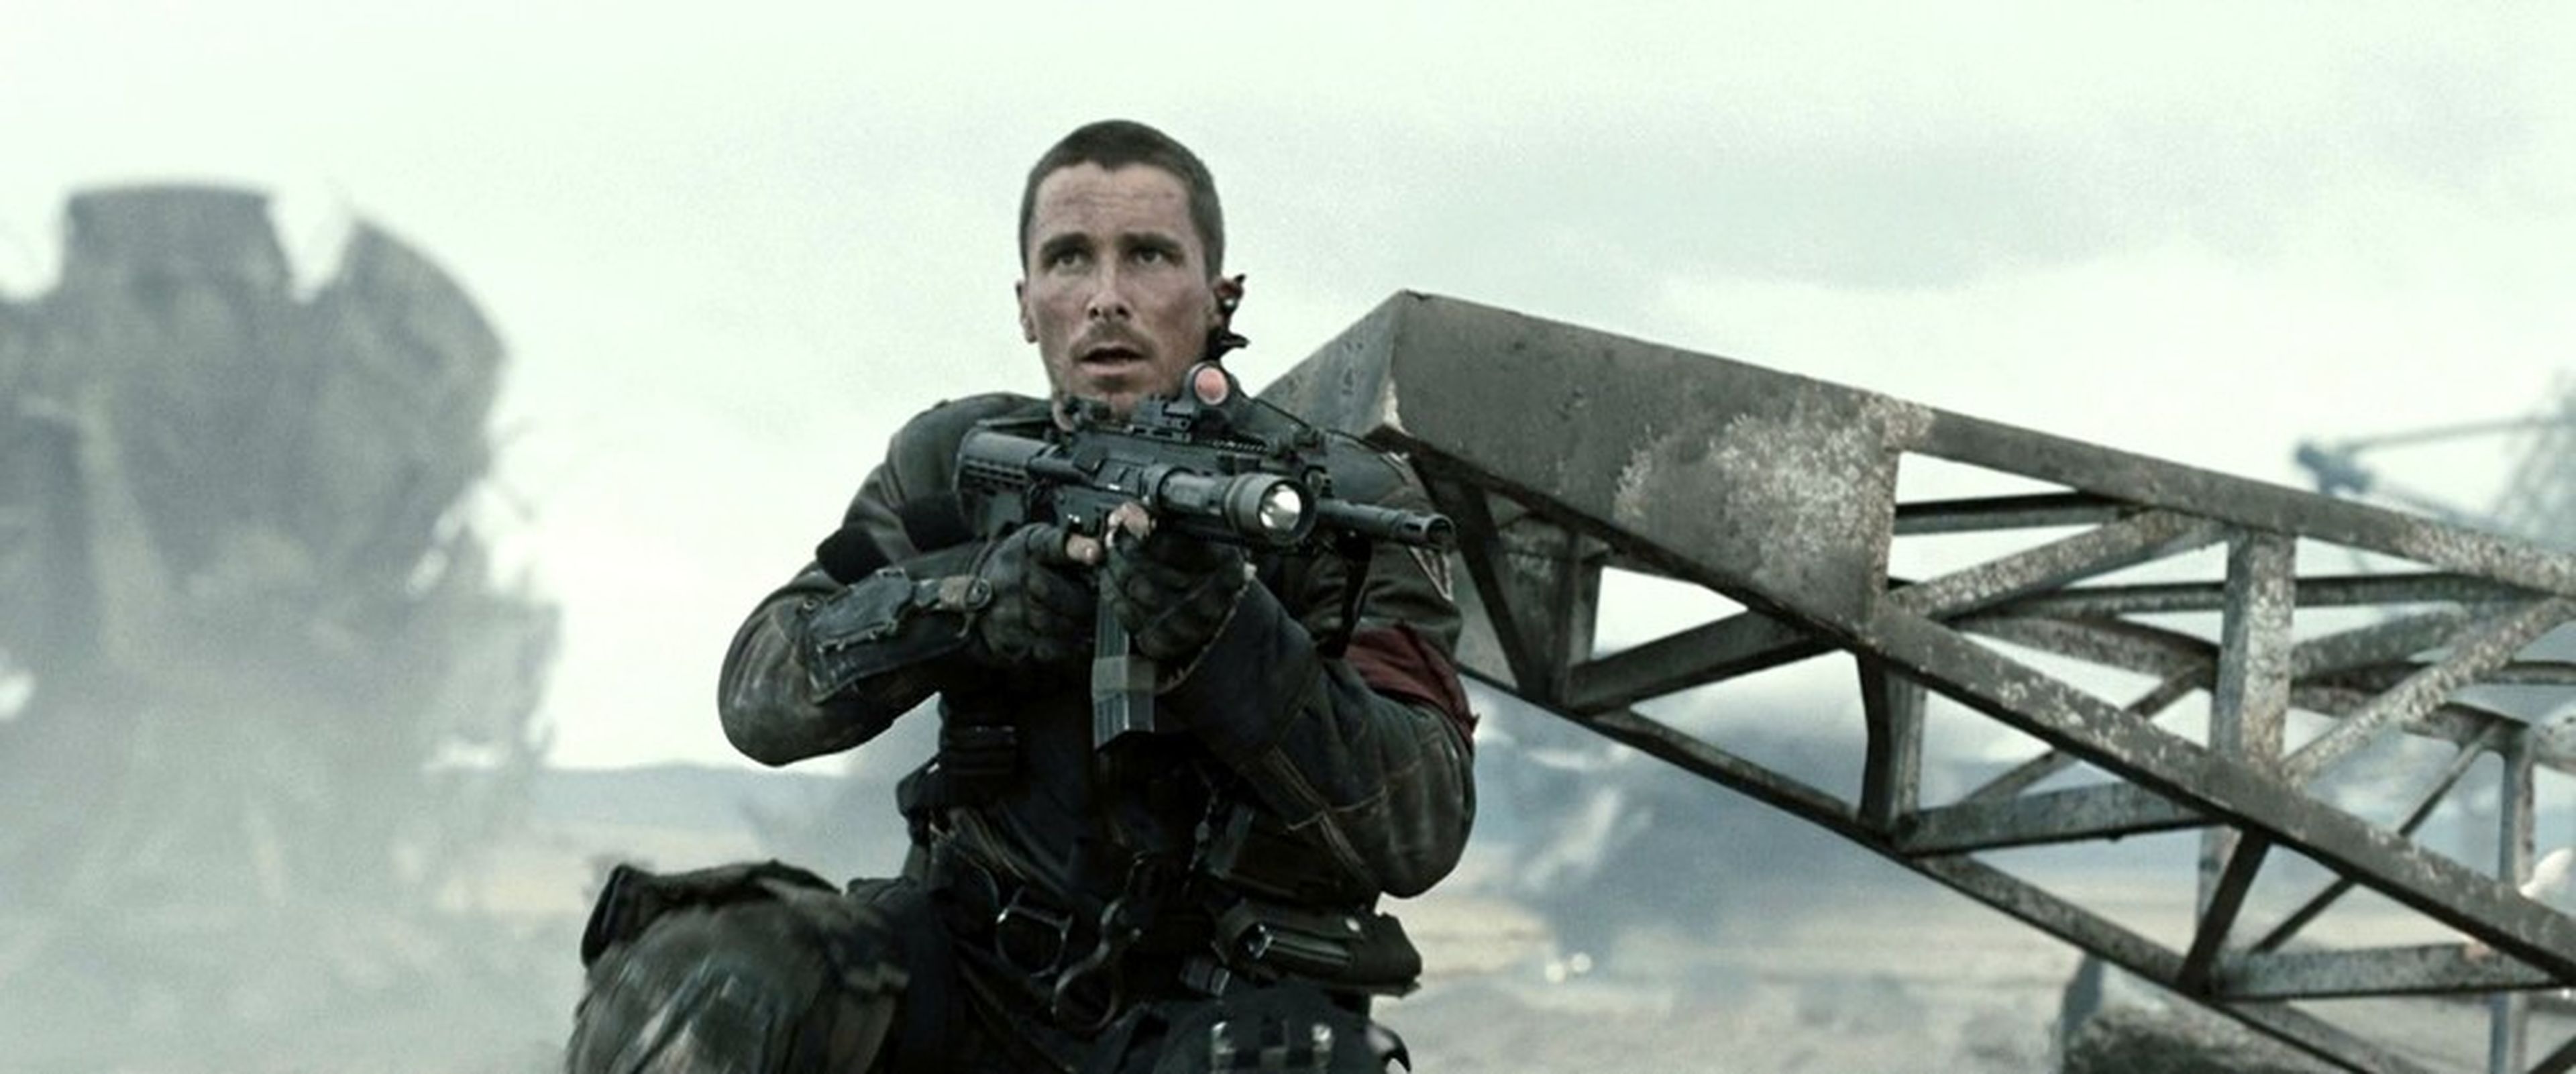 Christian Bale como John Connor en Terminator Salvation